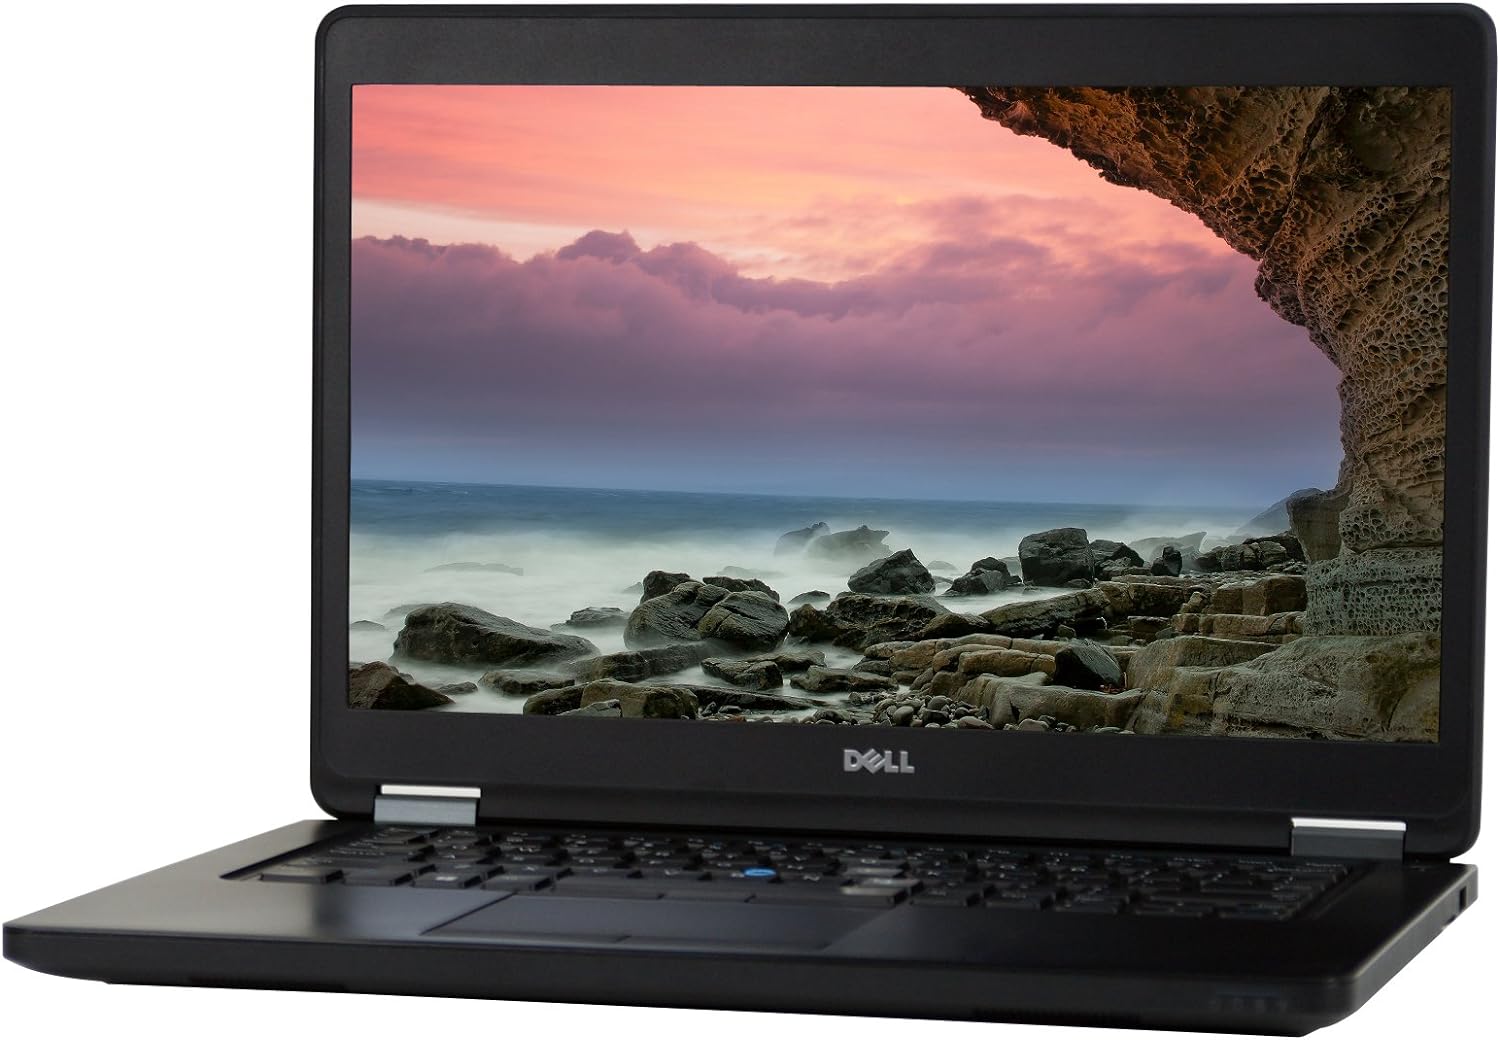 Refurbished Dell Latitude E5450 Laptop Computer Intel Core i5, 16GB Ram, 500GB Solid State Drive, Windows 10